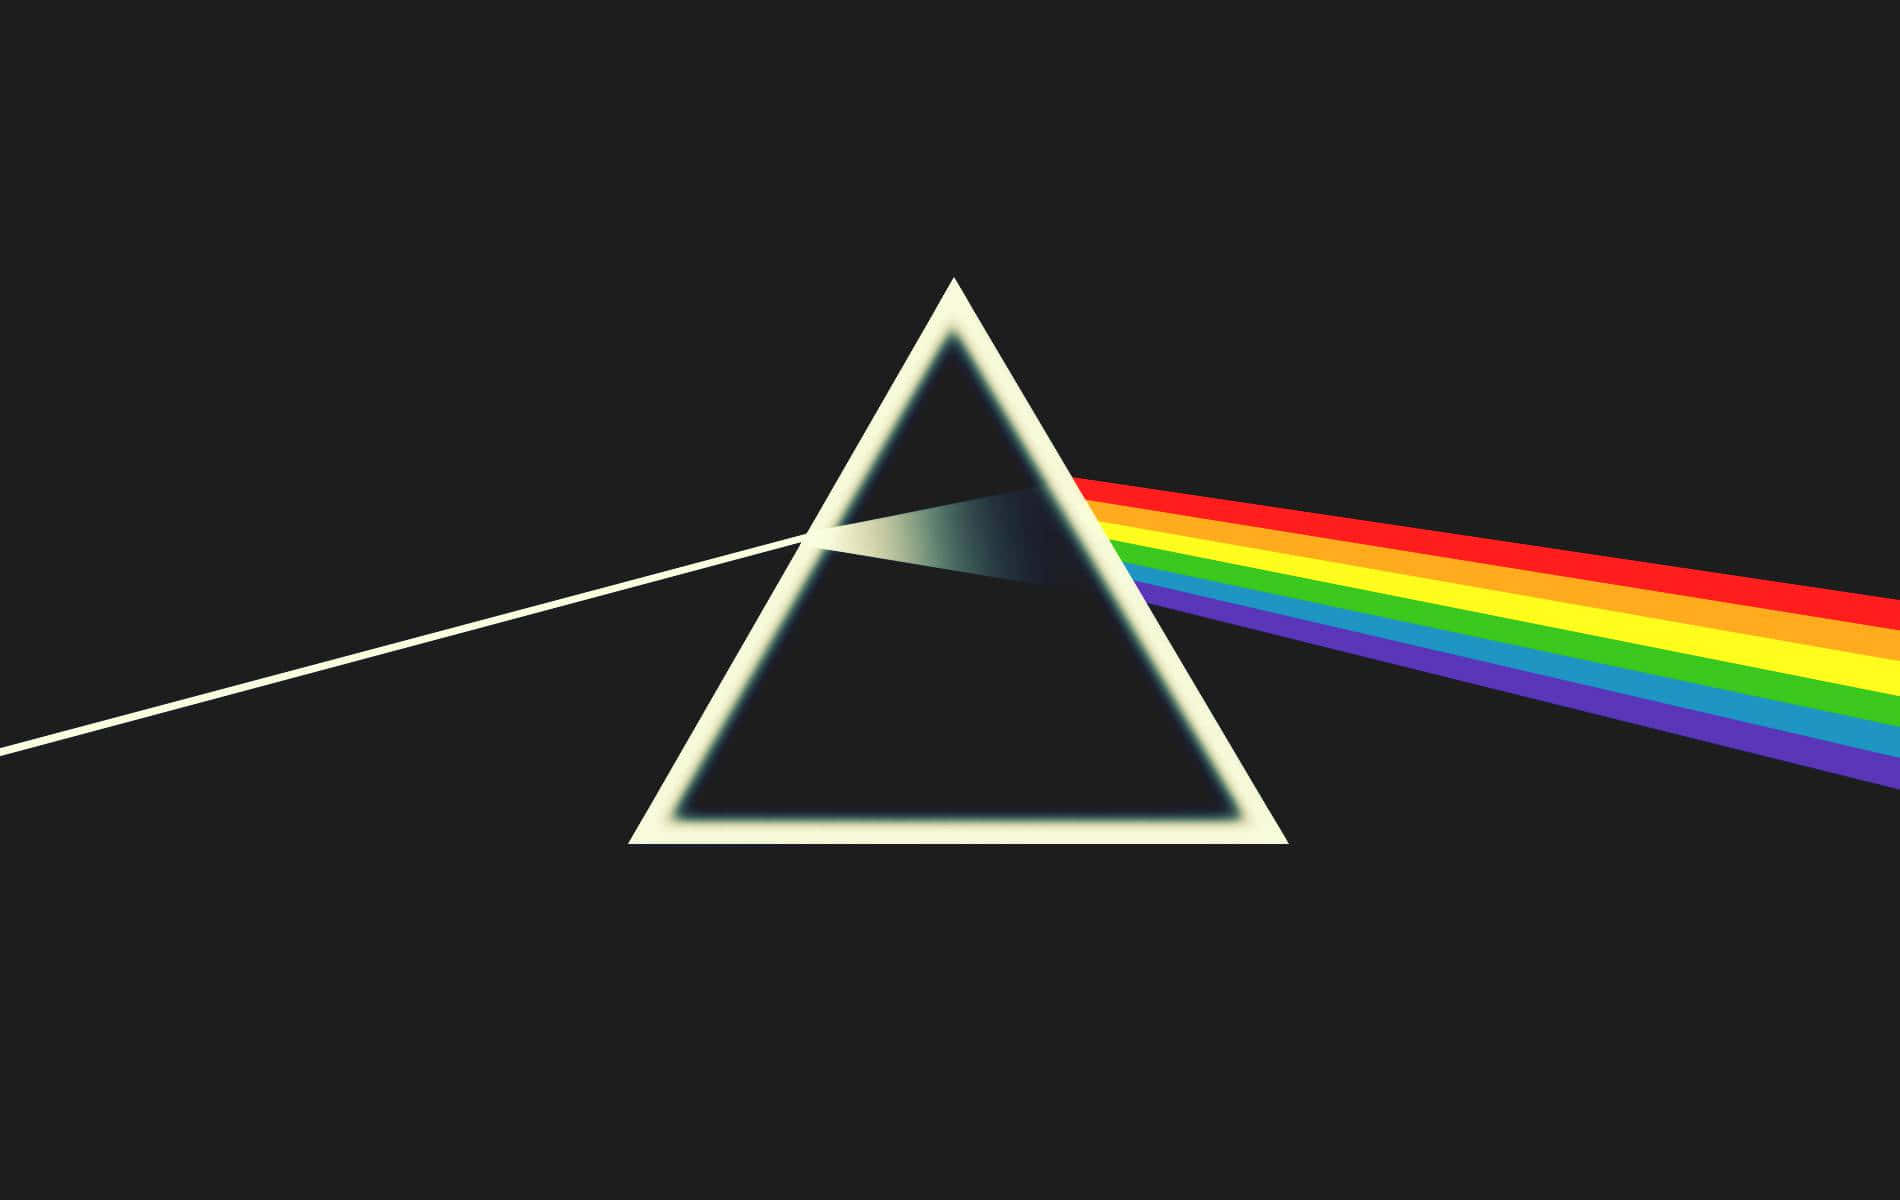 Den ikoniske albumkunstværk for Pink Floyds klassiske LP, Dark Side of the Moon Wallpaper